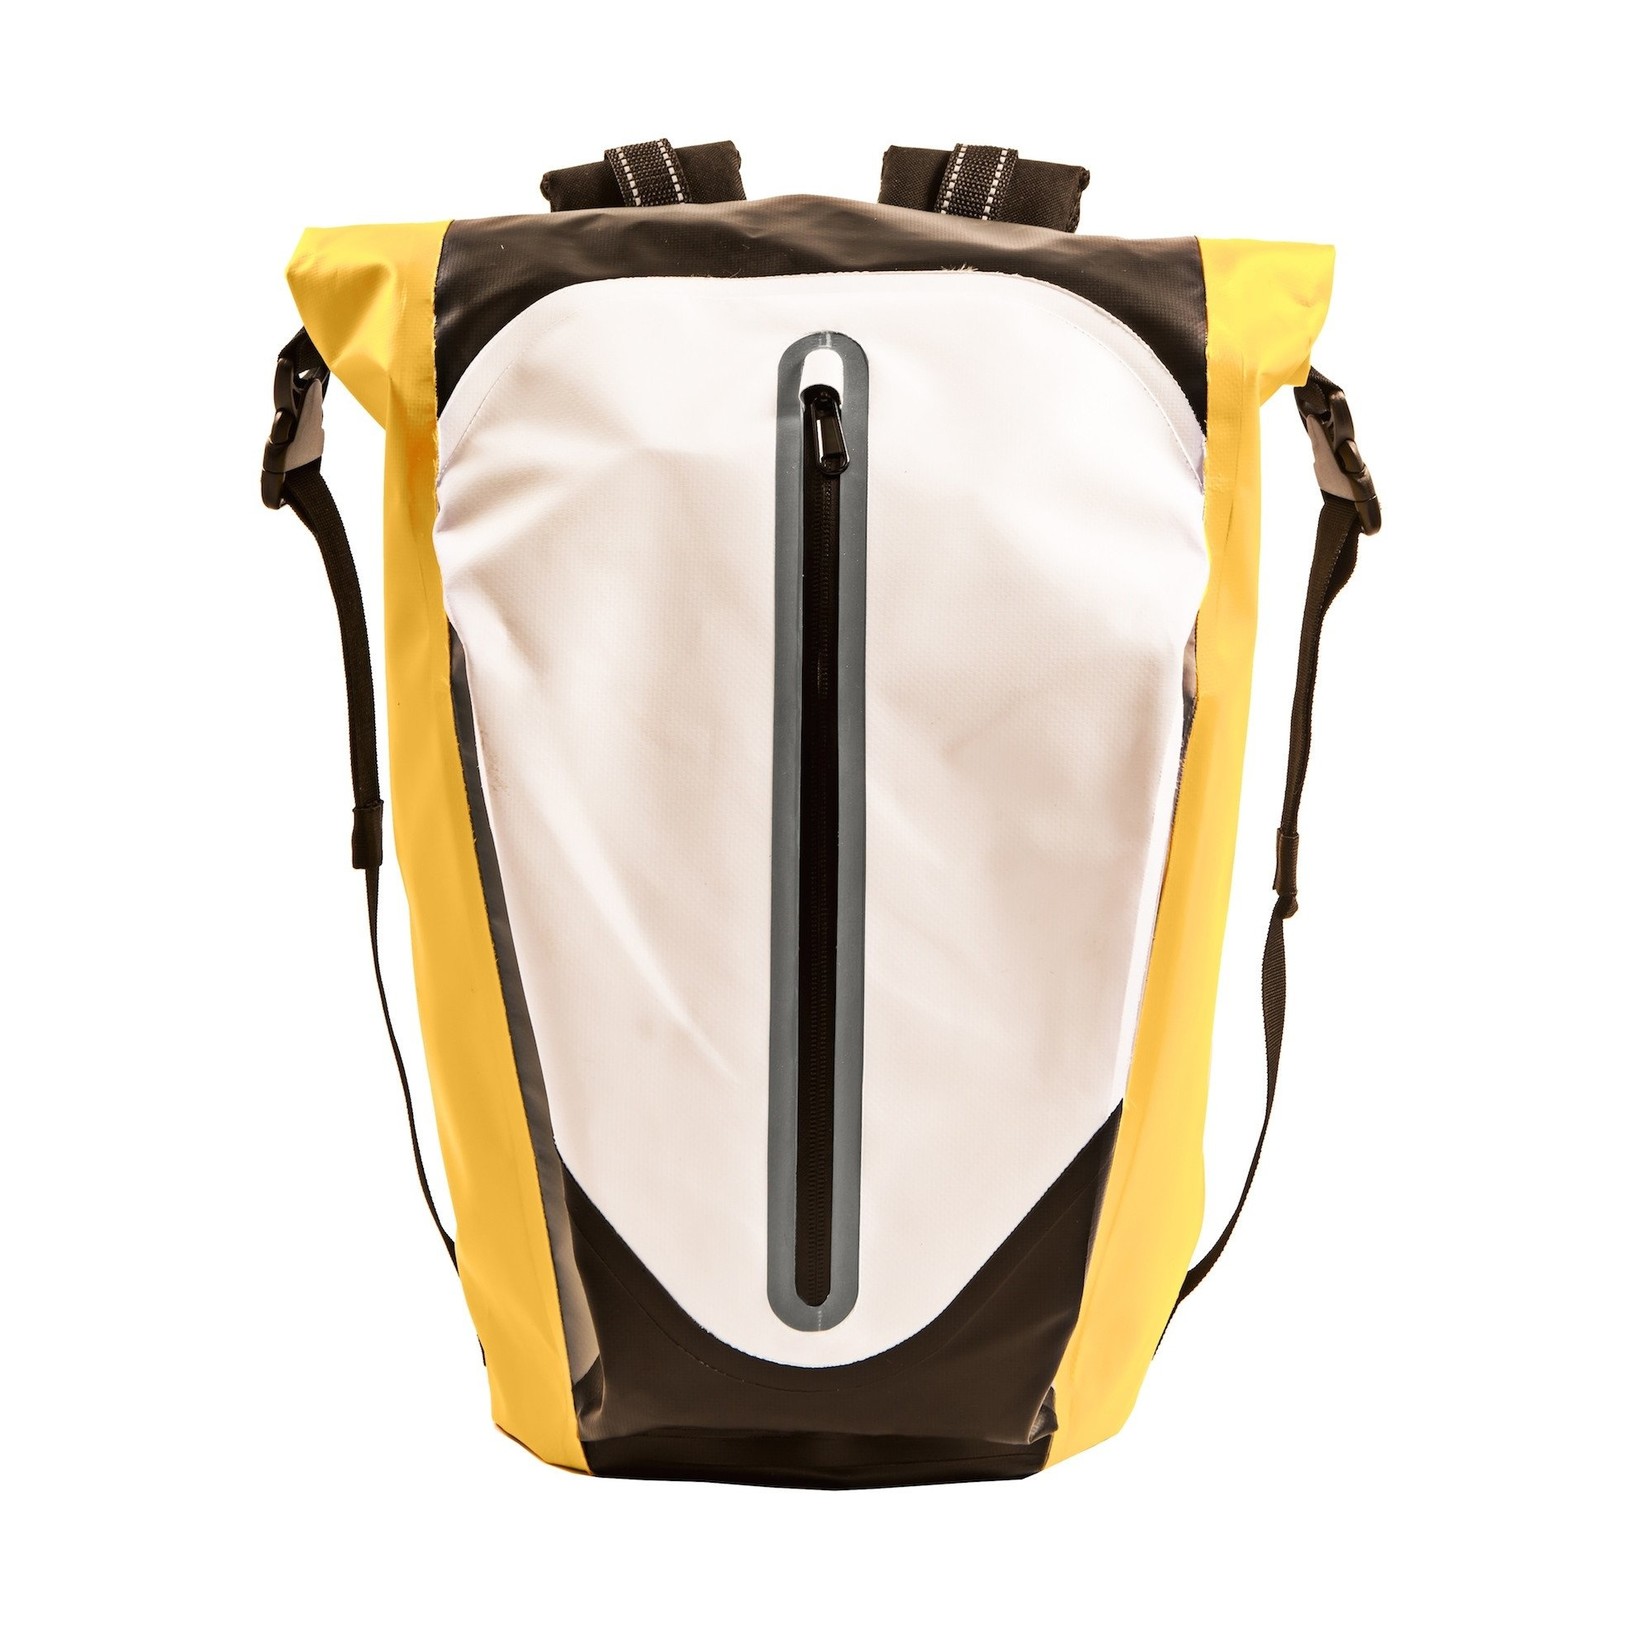 Monkey See MonkeySee Waterproof Backpack - 30 Litre